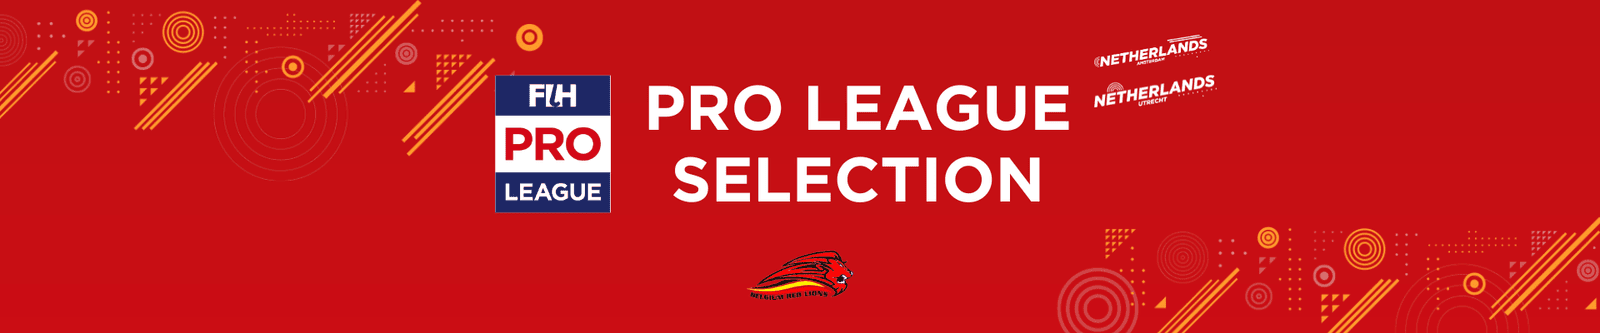 belgium selection red lions pour la hockey pro league et nominations pour la selection olympique 6668dac29c5f0 - Belgium - Belgium